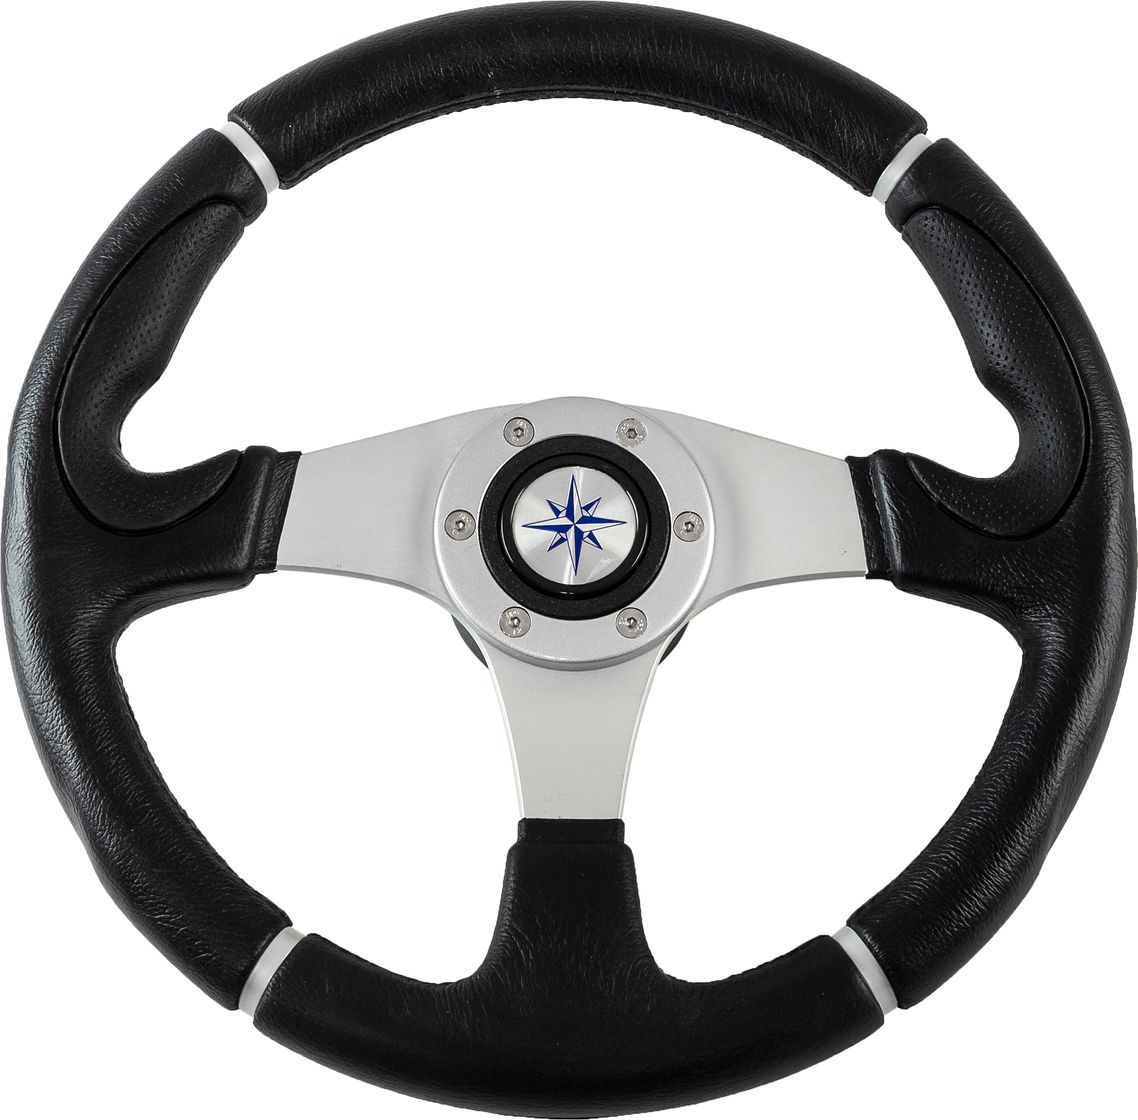 Рулевое колесо ORION обод черный, спицы серебряные д. 355 мм VN960101-01 рулевое колесо orion обод спицы серебряные д 340 мм vn934122 01